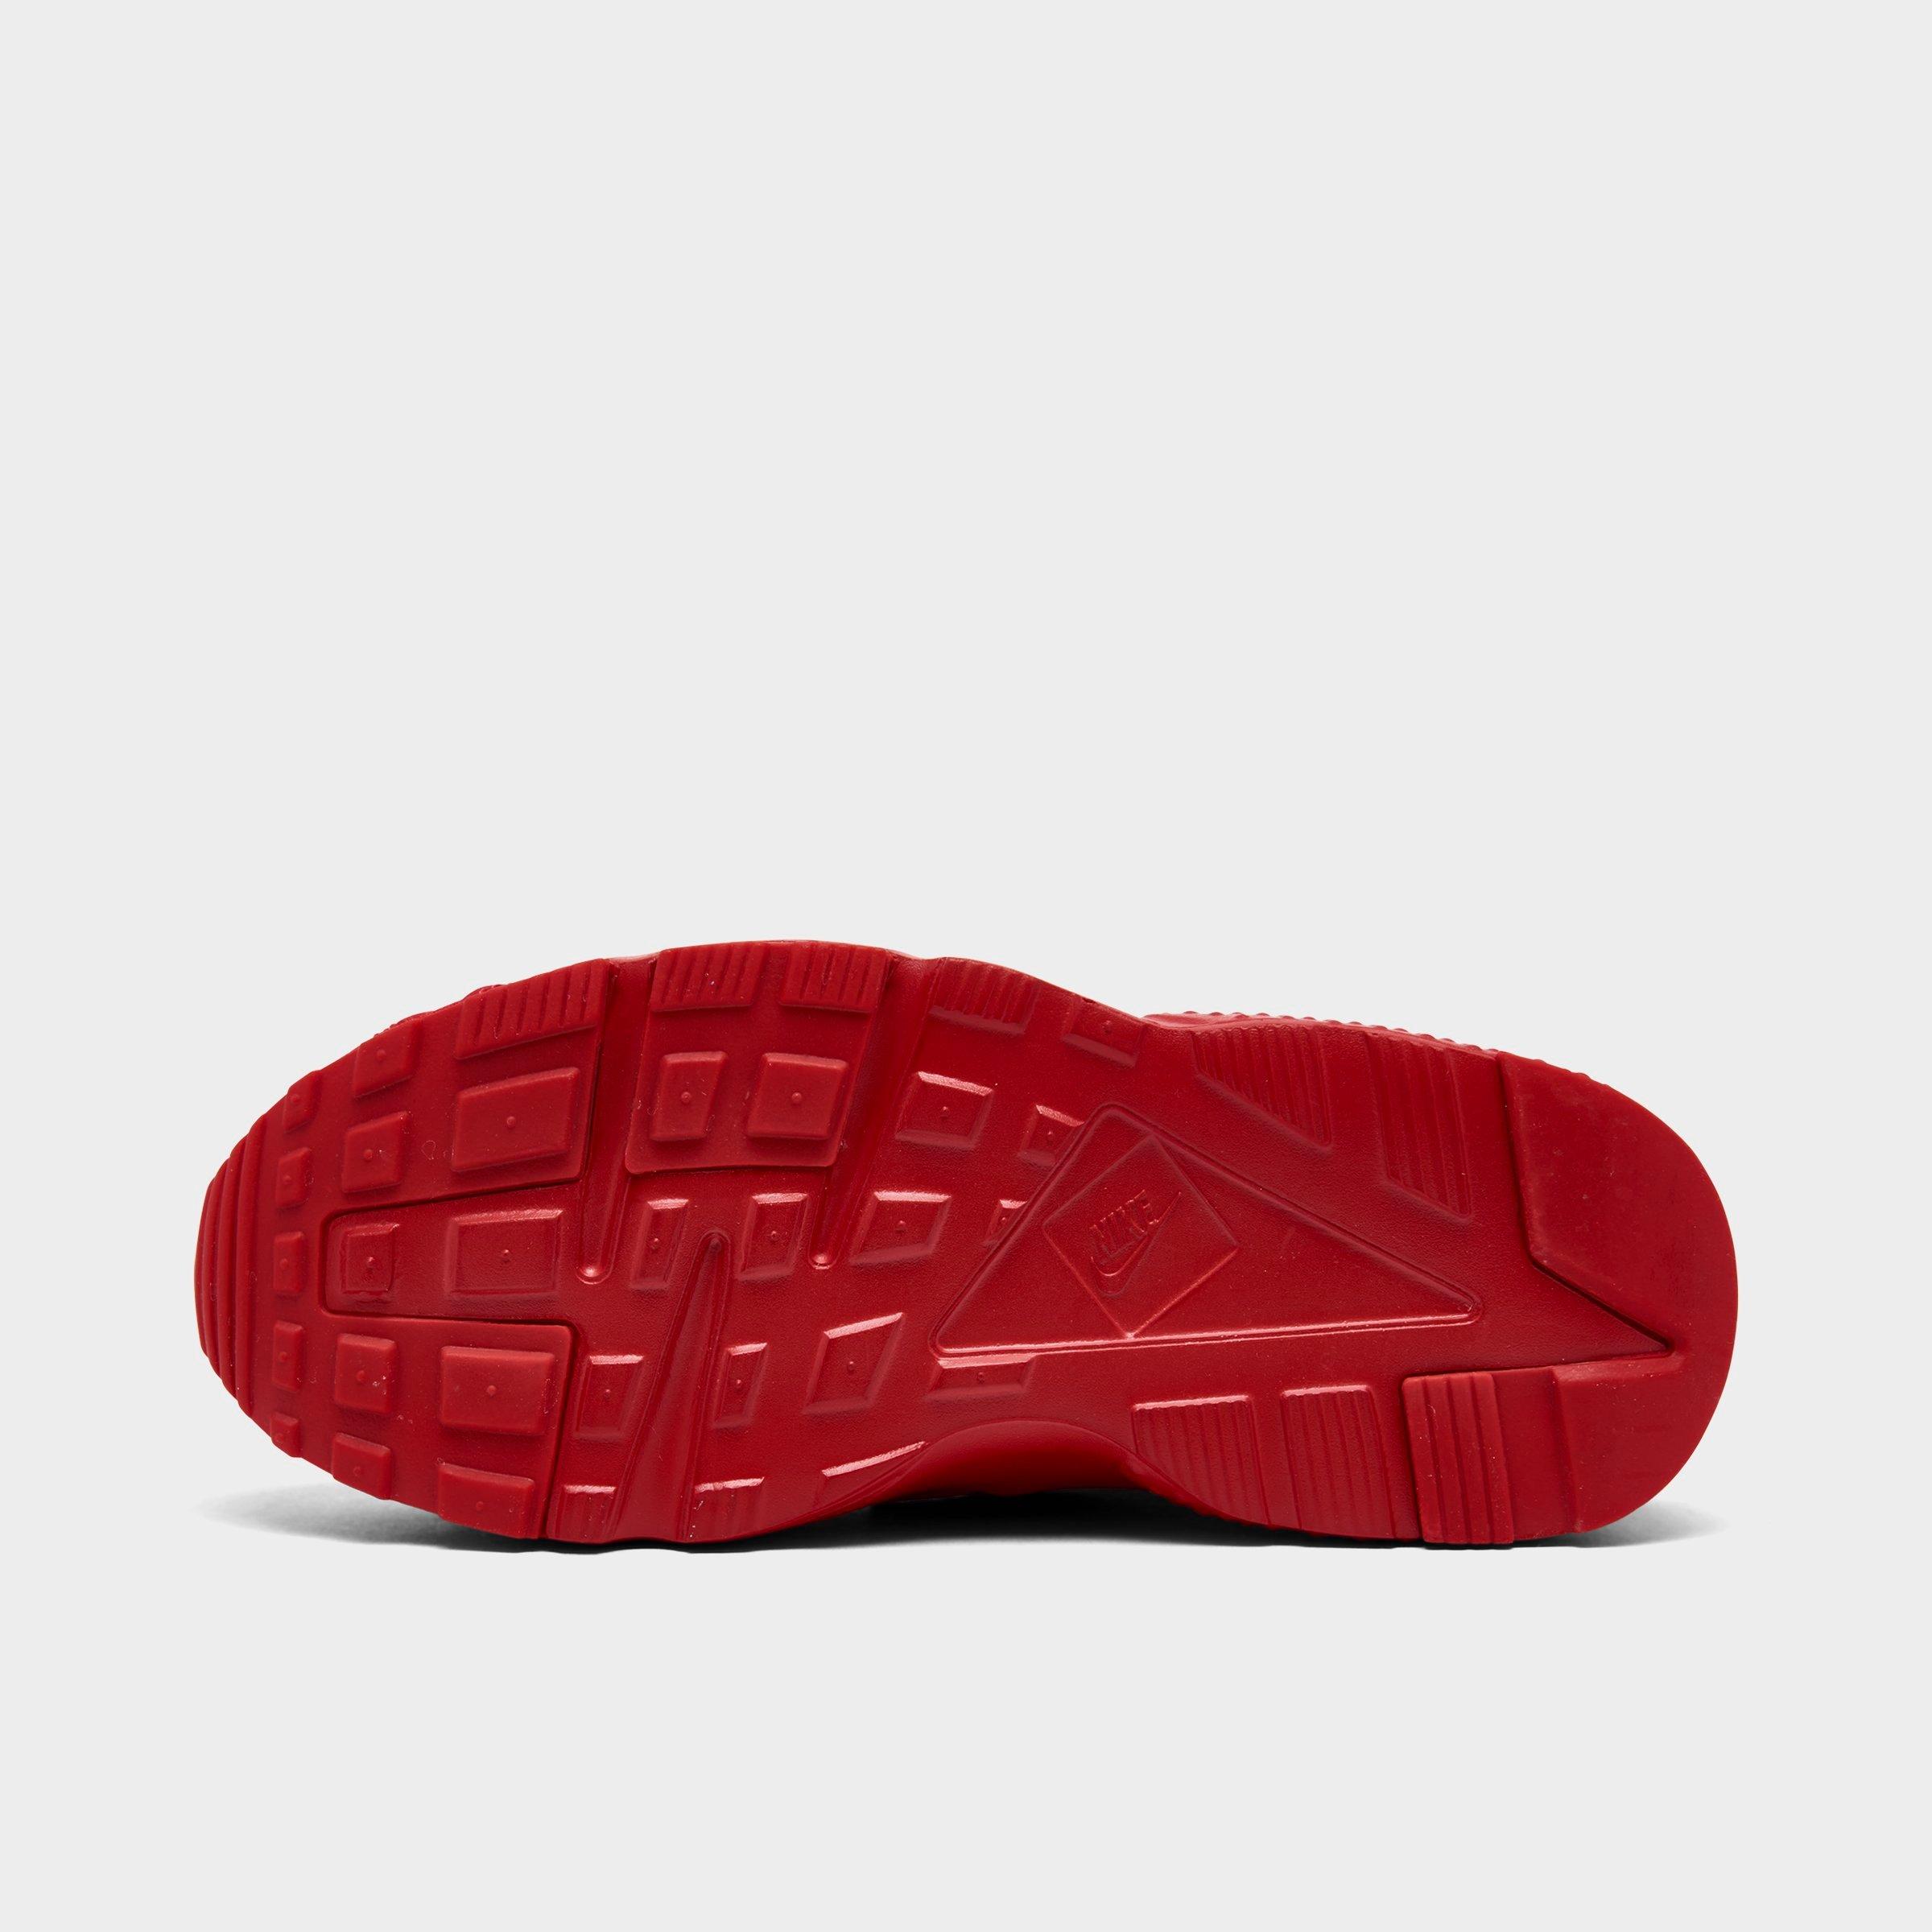 Kids' Nike Huarache Run Casual Shoes 